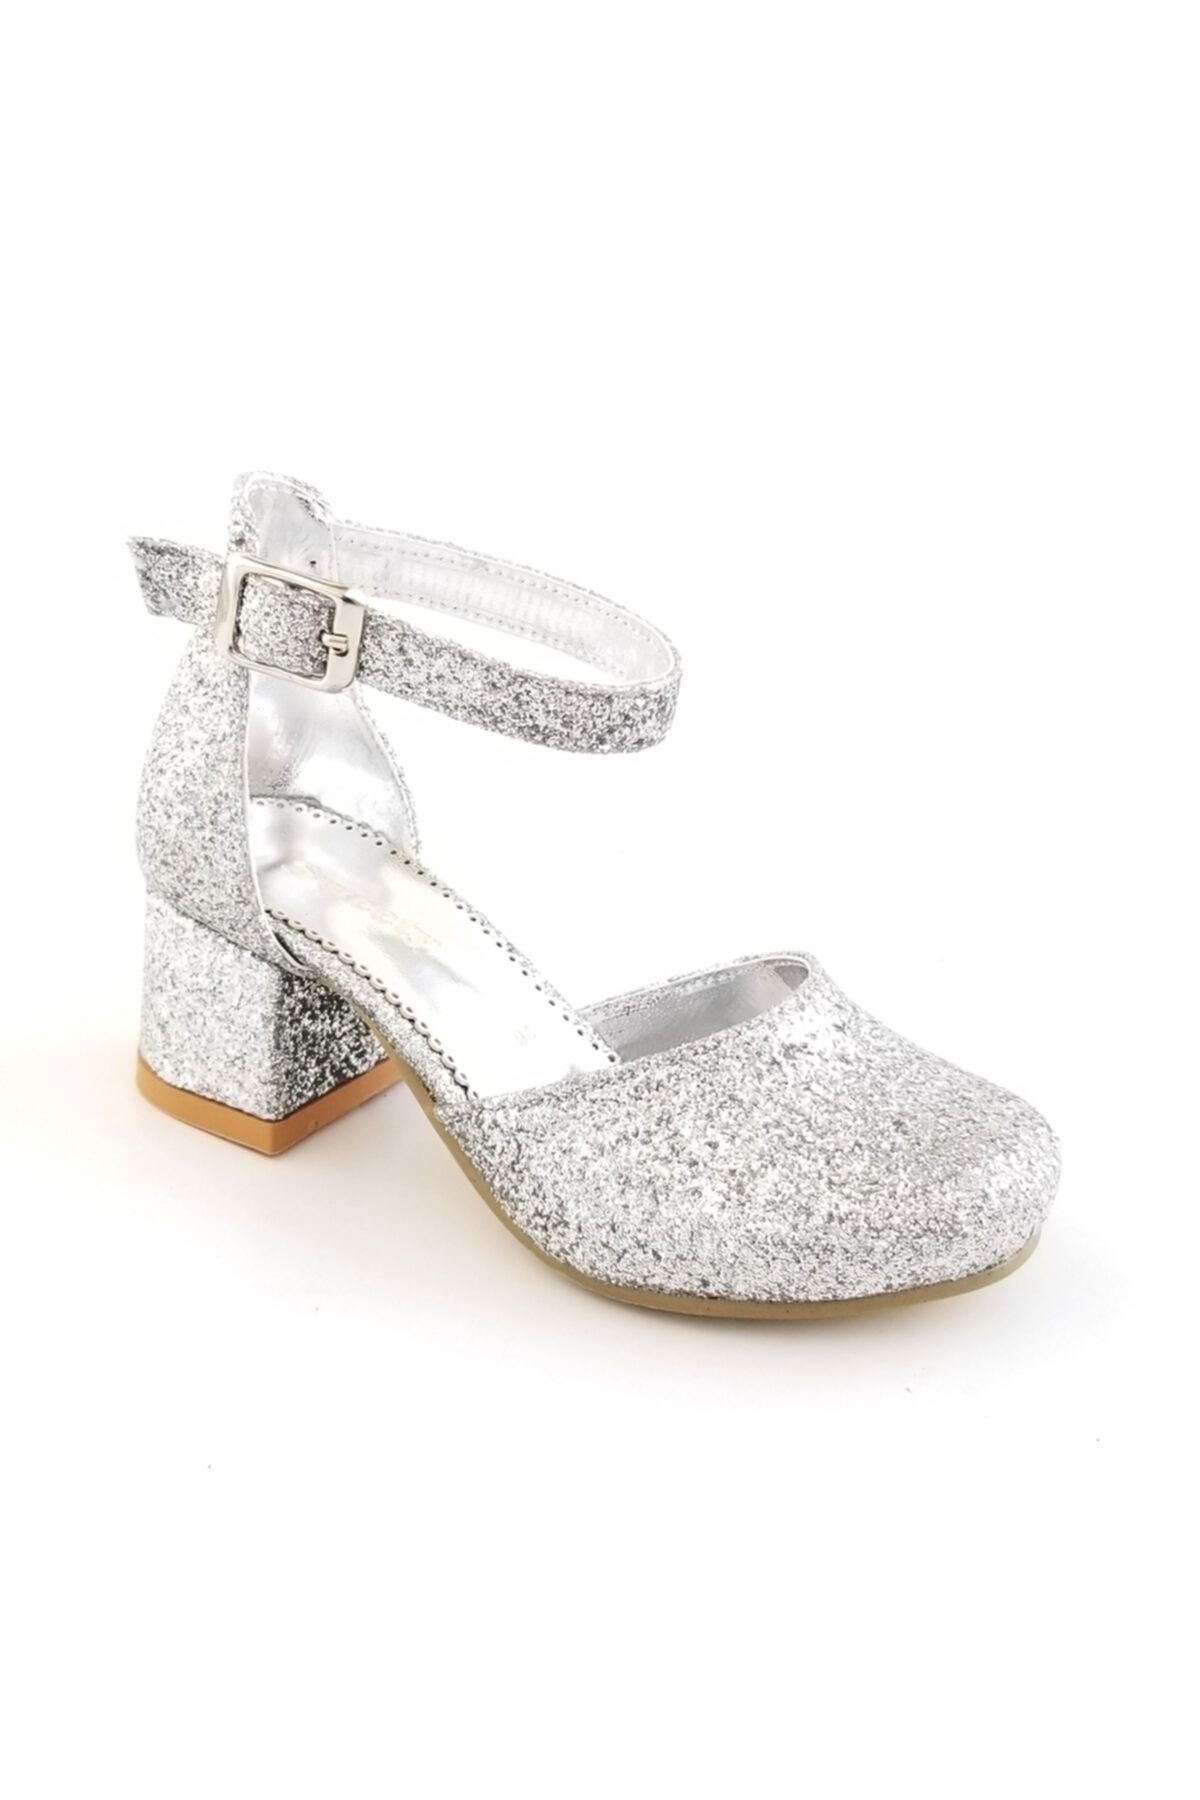 SWEETY Kız Çocuk  Simli Topuklu Ayakkabı Gümüş 148